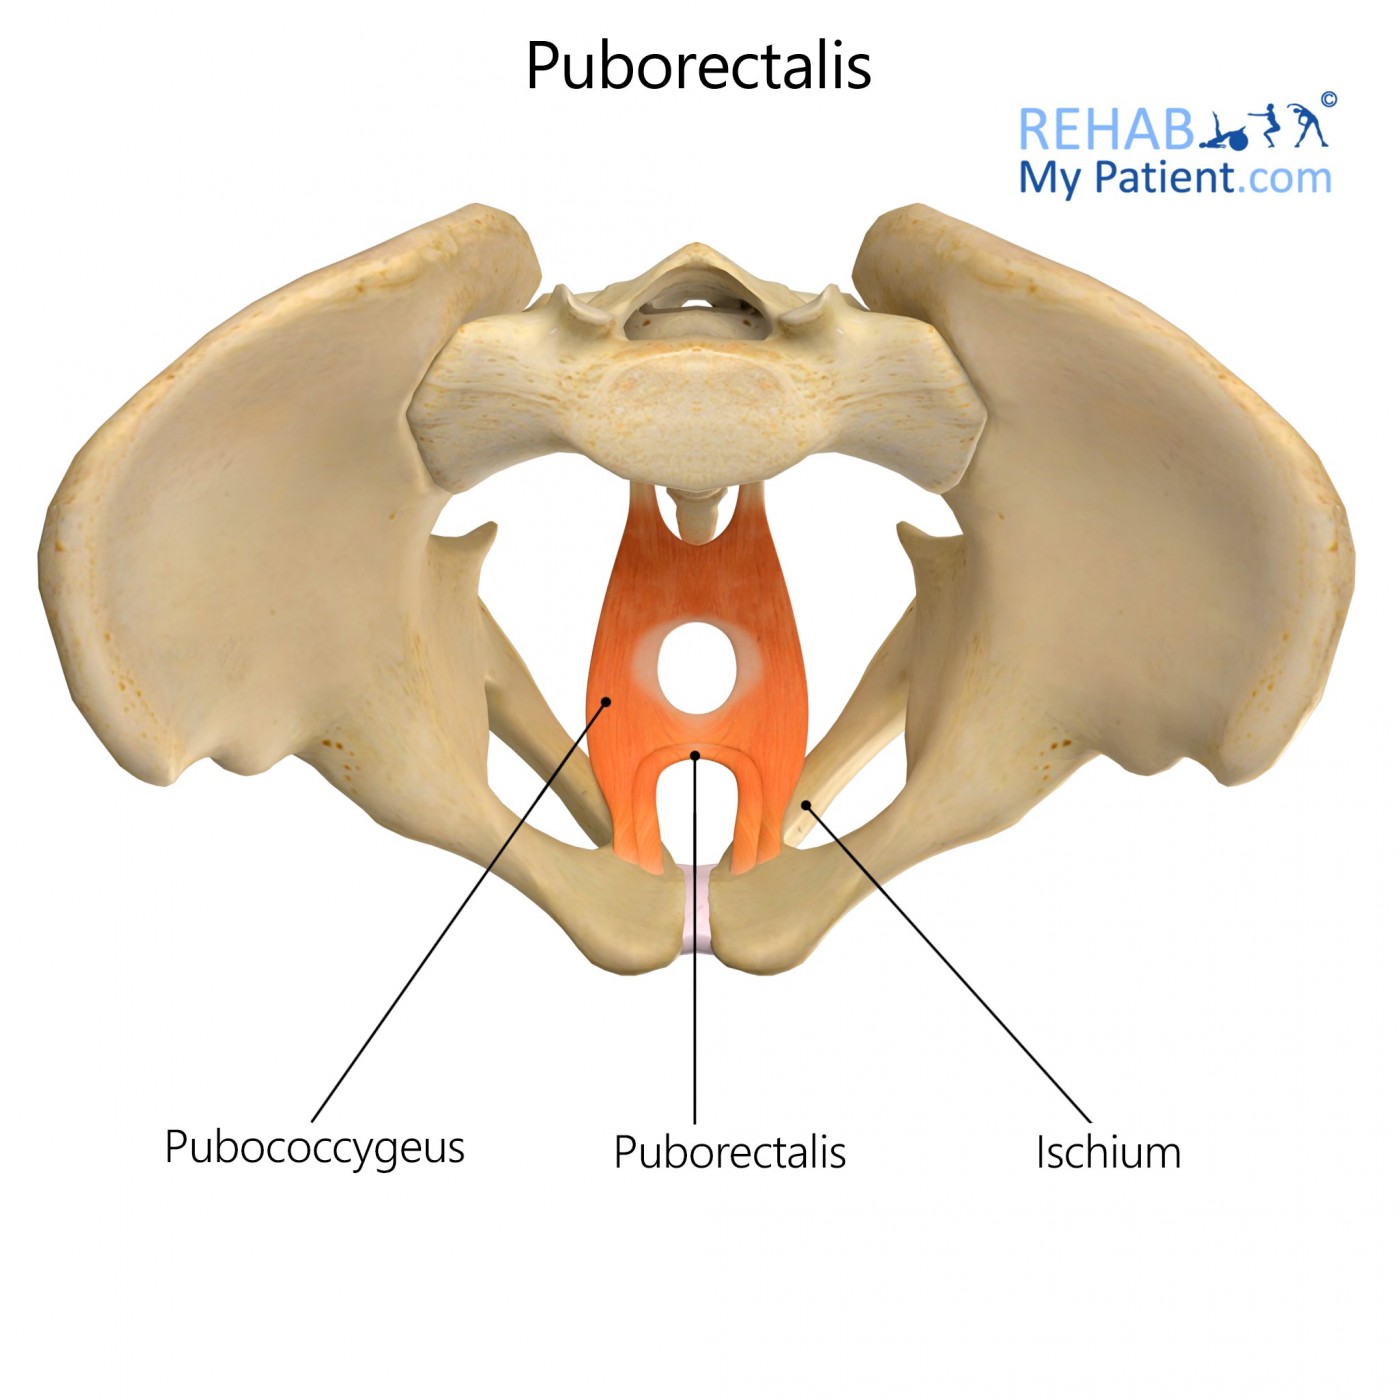 Puborectalis